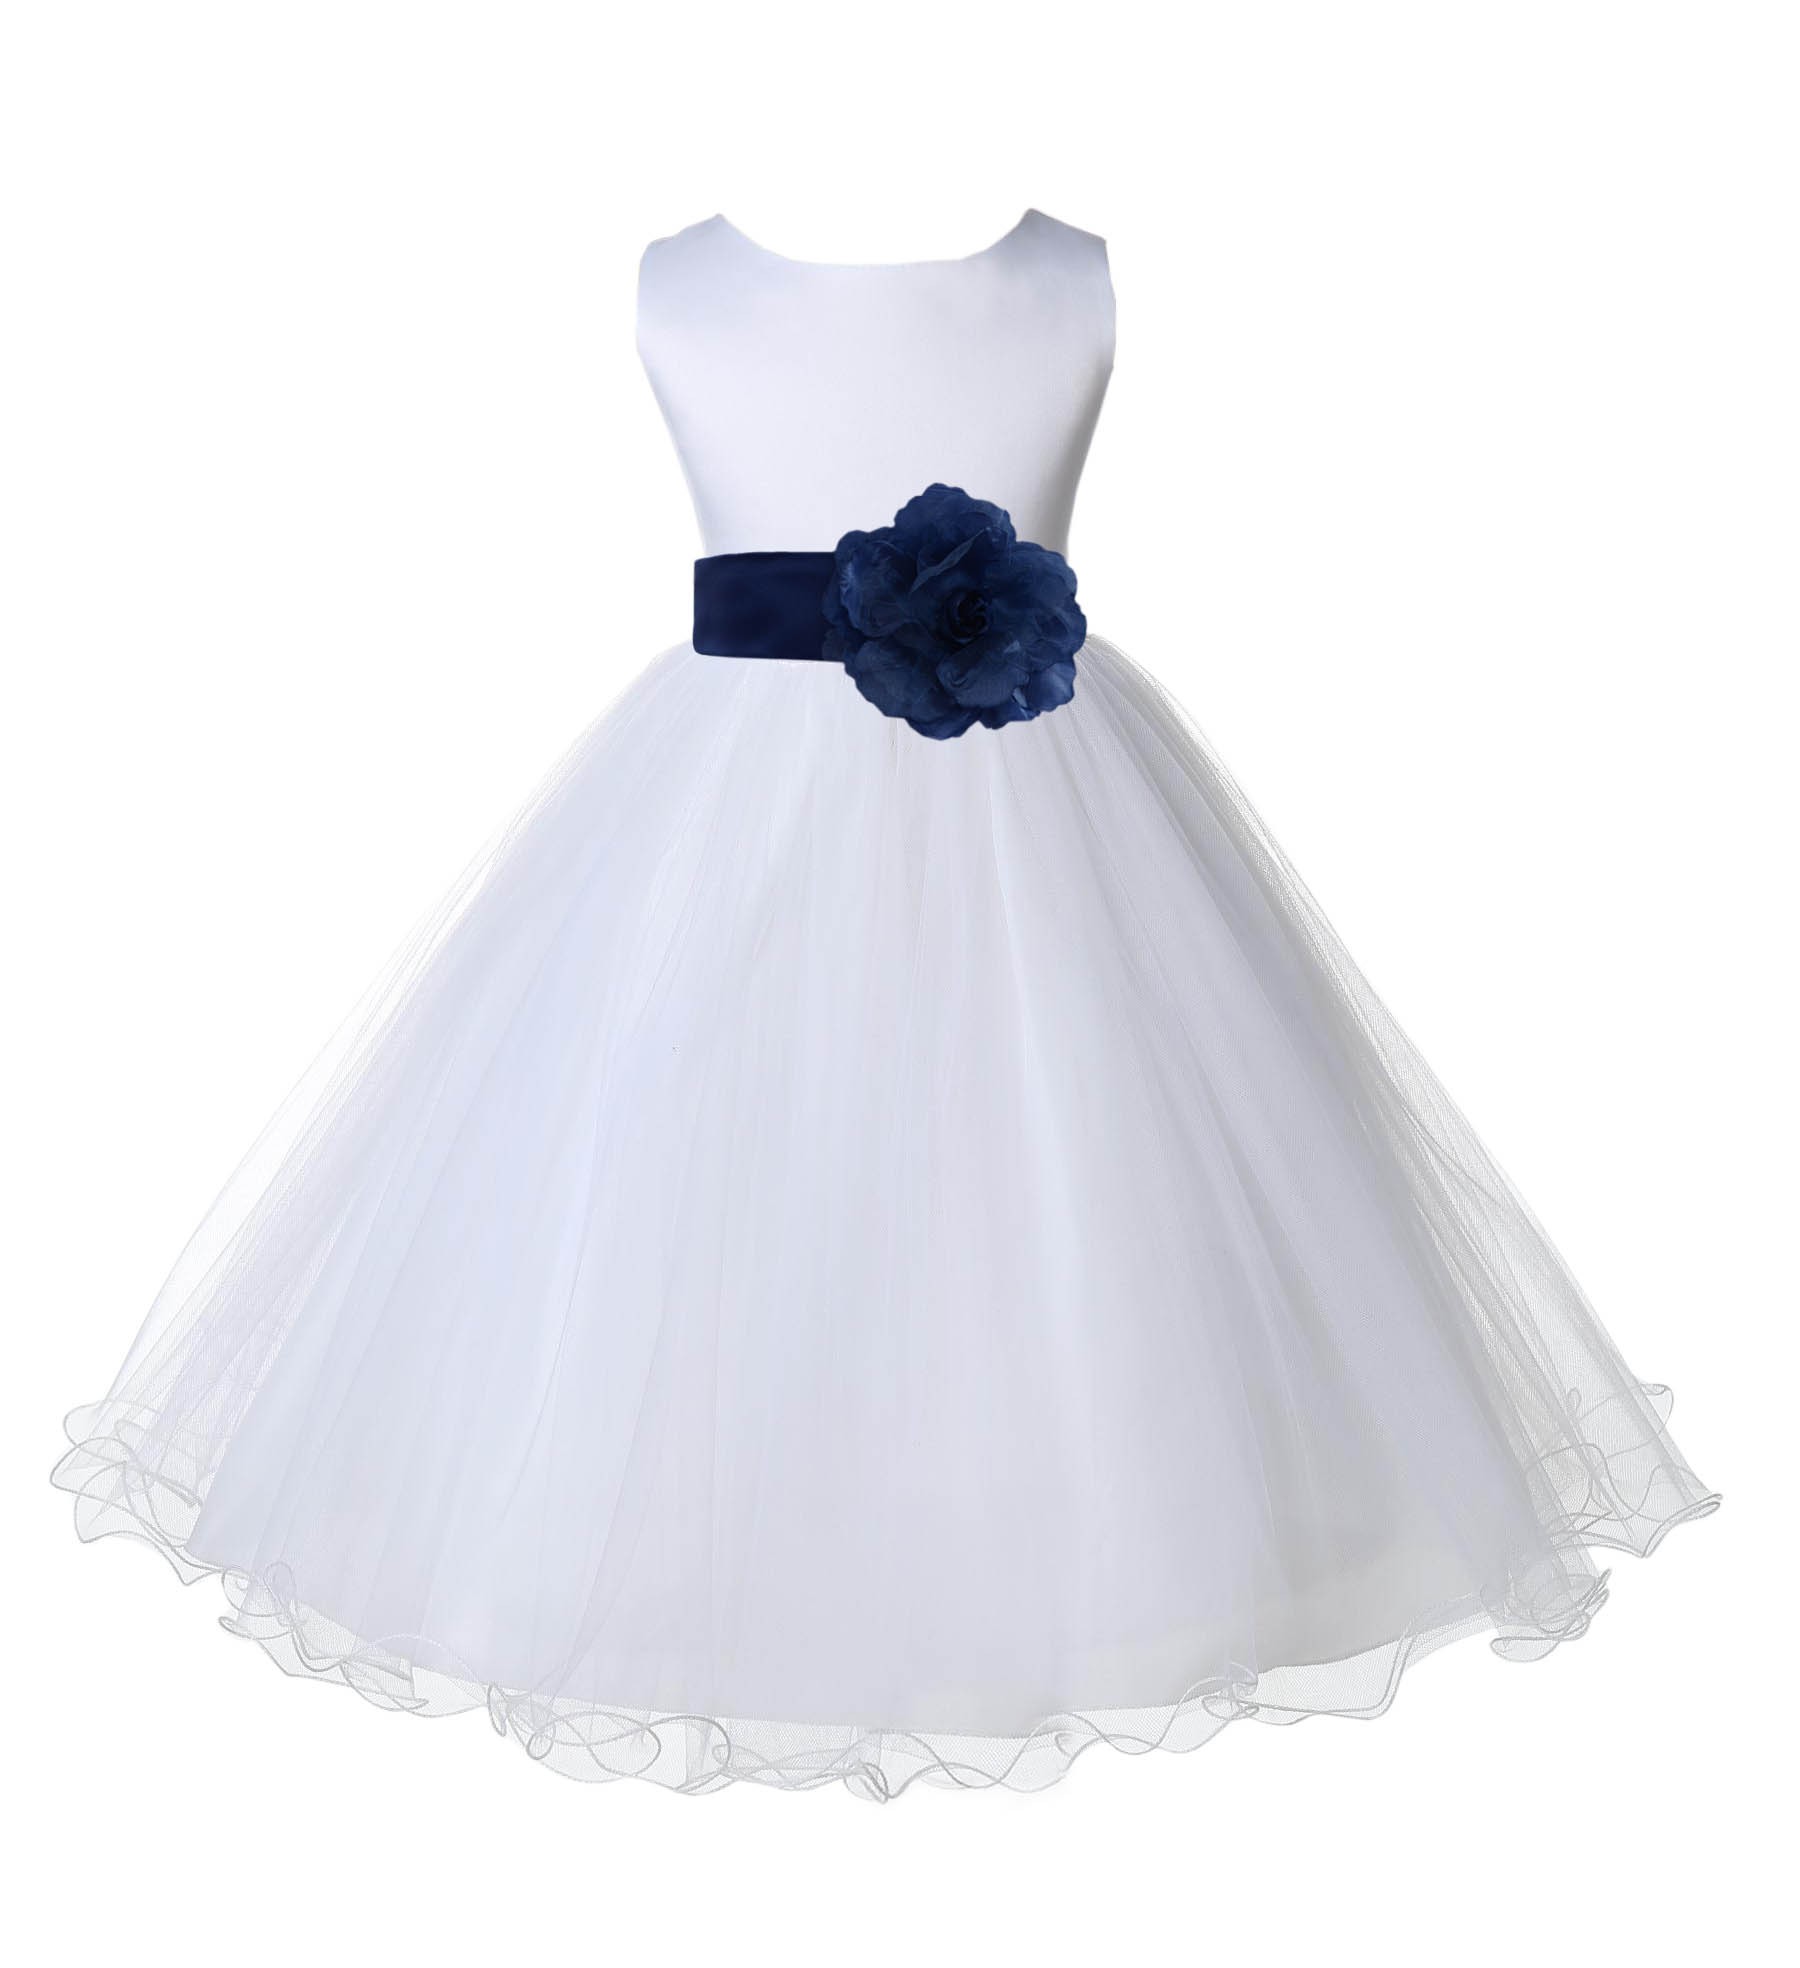 White/Peacock Tulle Rattail Edge Flower Girl Dress Wedding Bridal 829S